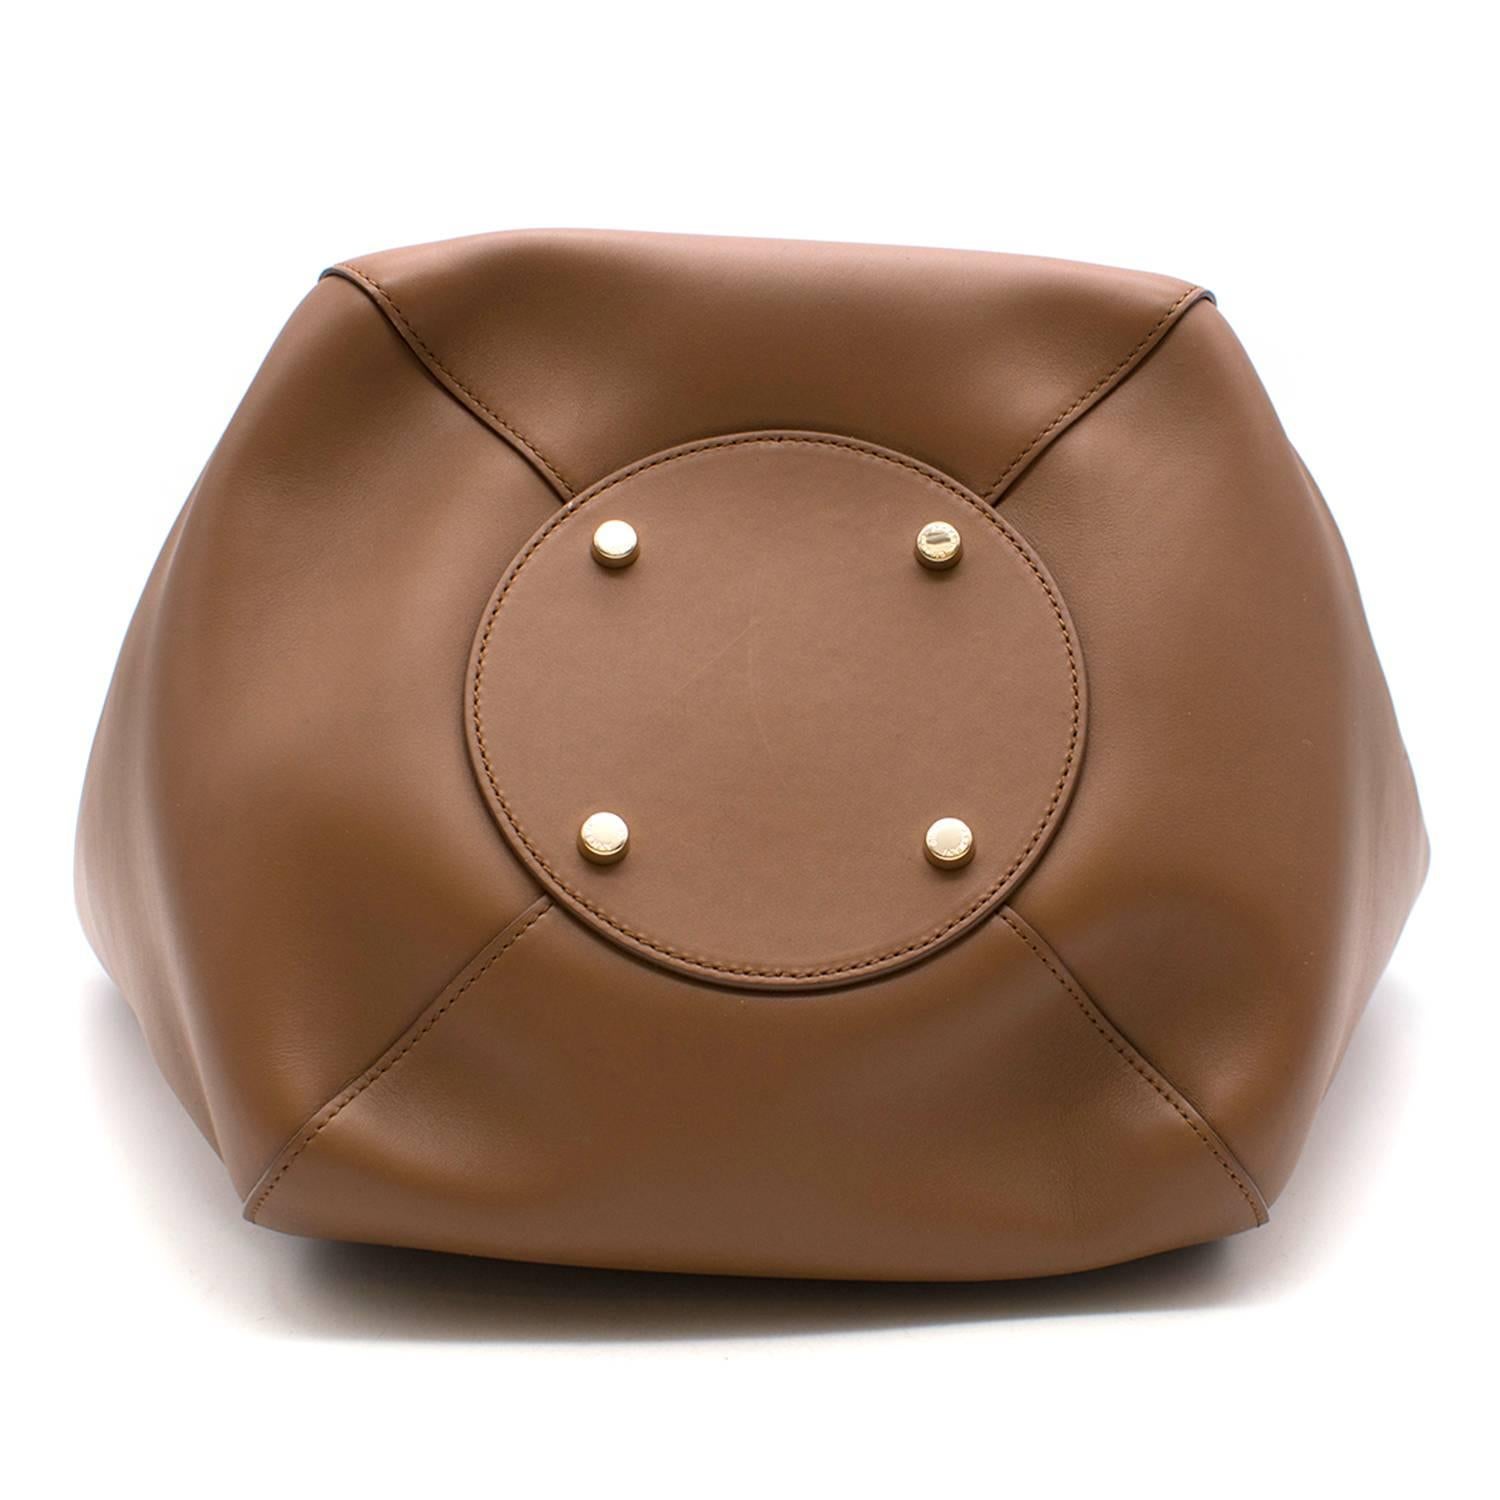 Giorgio Armani Brown Leather Tote Bag   In New Condition For Sale In London, GB